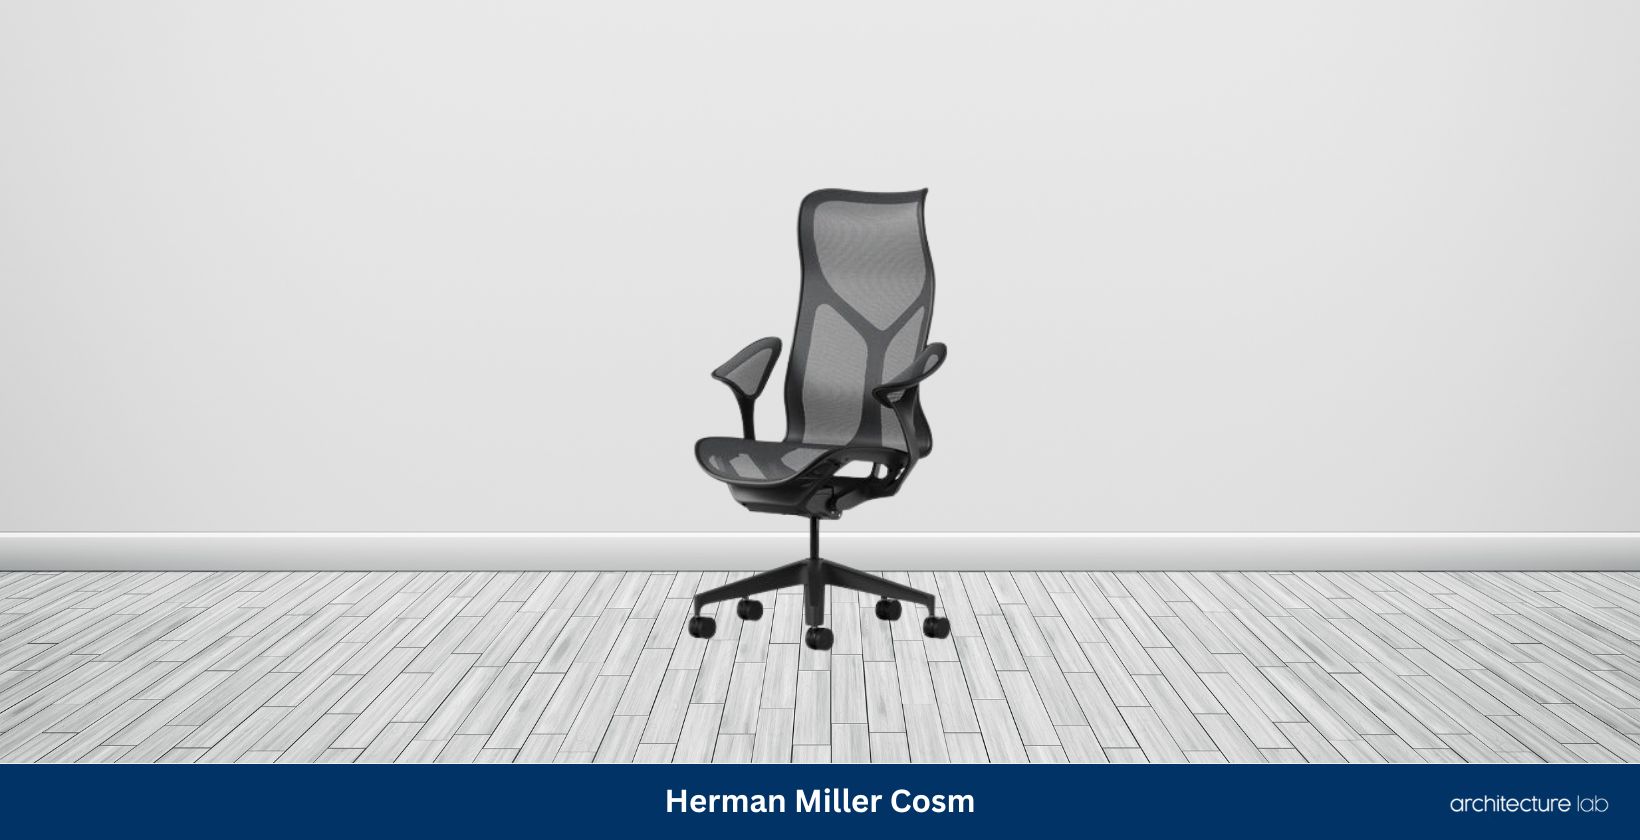 Herman miller cosm